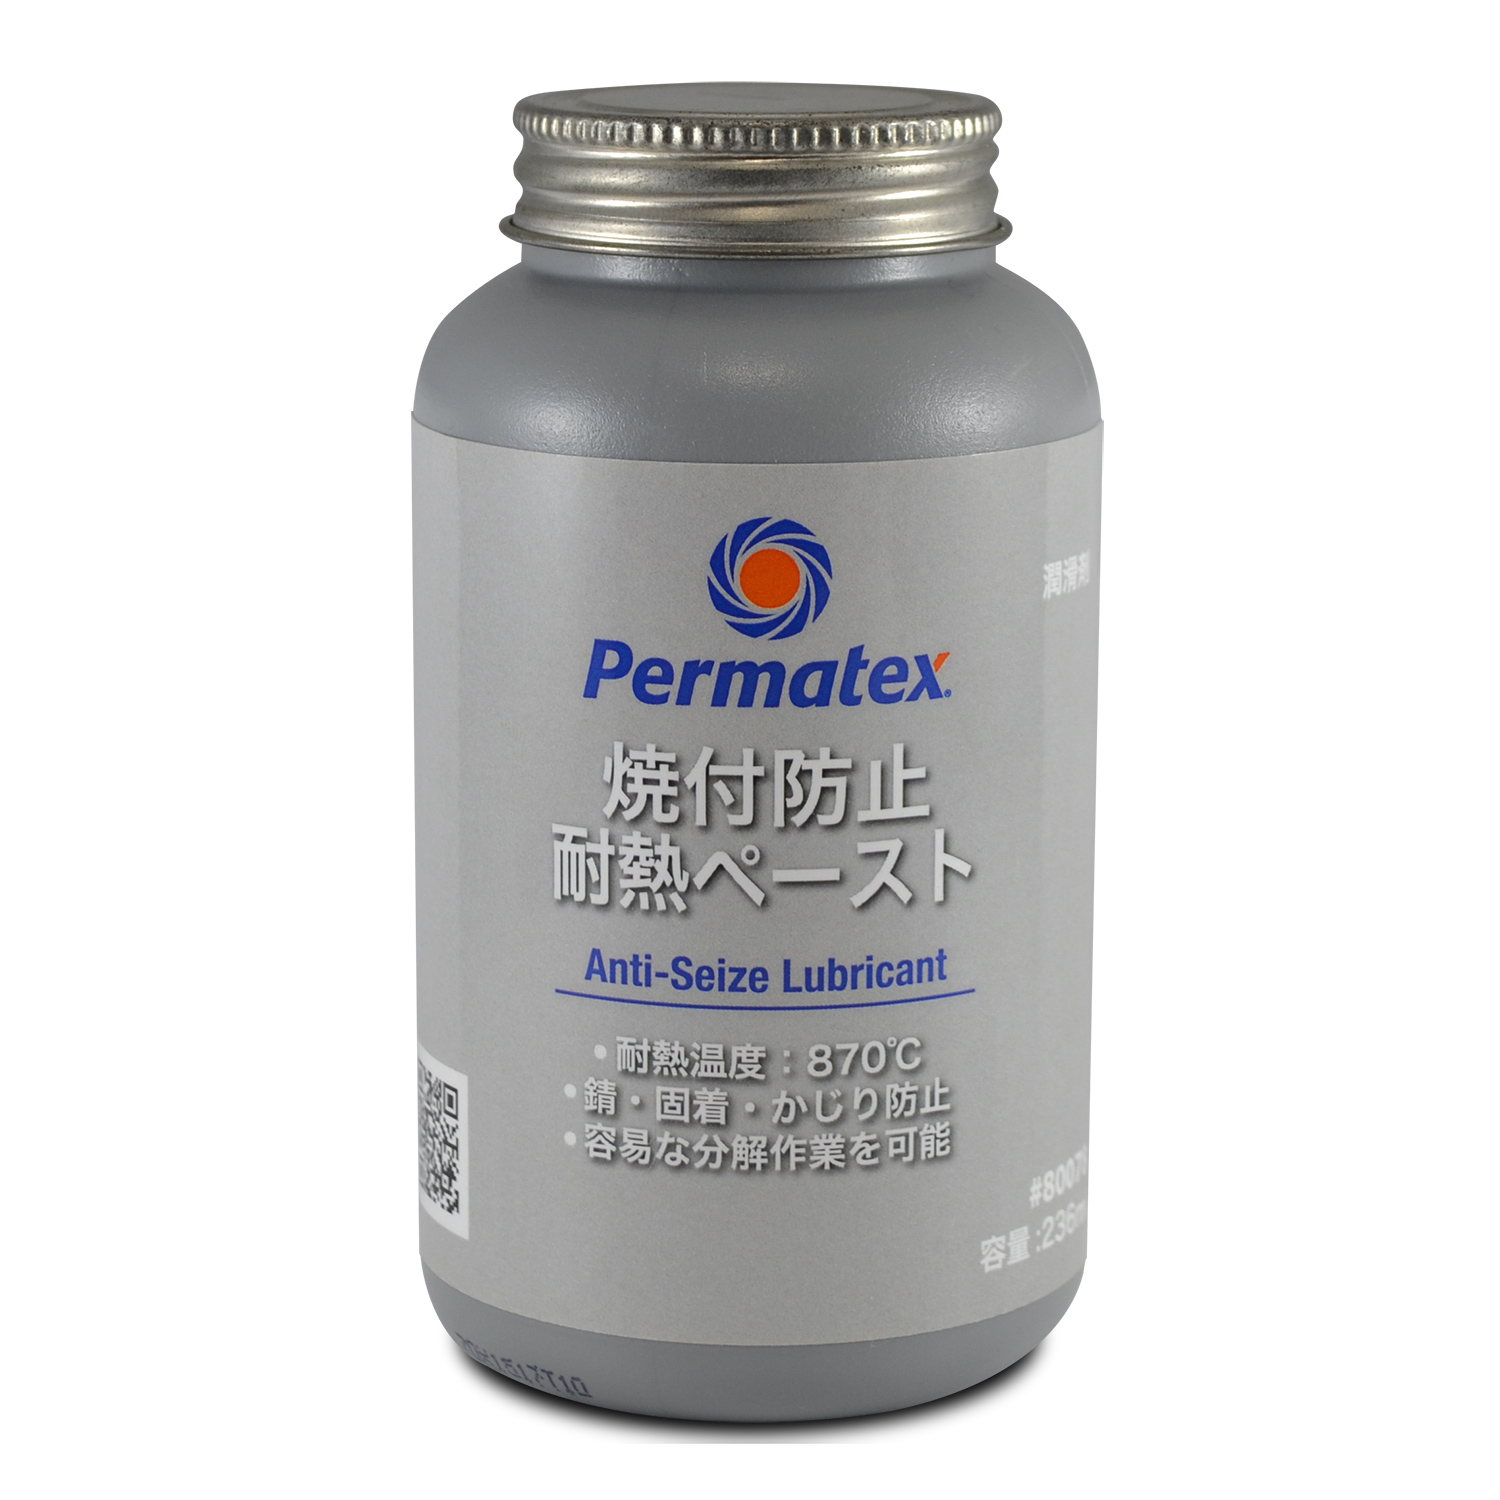 感謝価格 Permatex Permatex:パーマテックス 焼付防止耐熱ペースト アンチシーズ siteenergyservices.co.uk